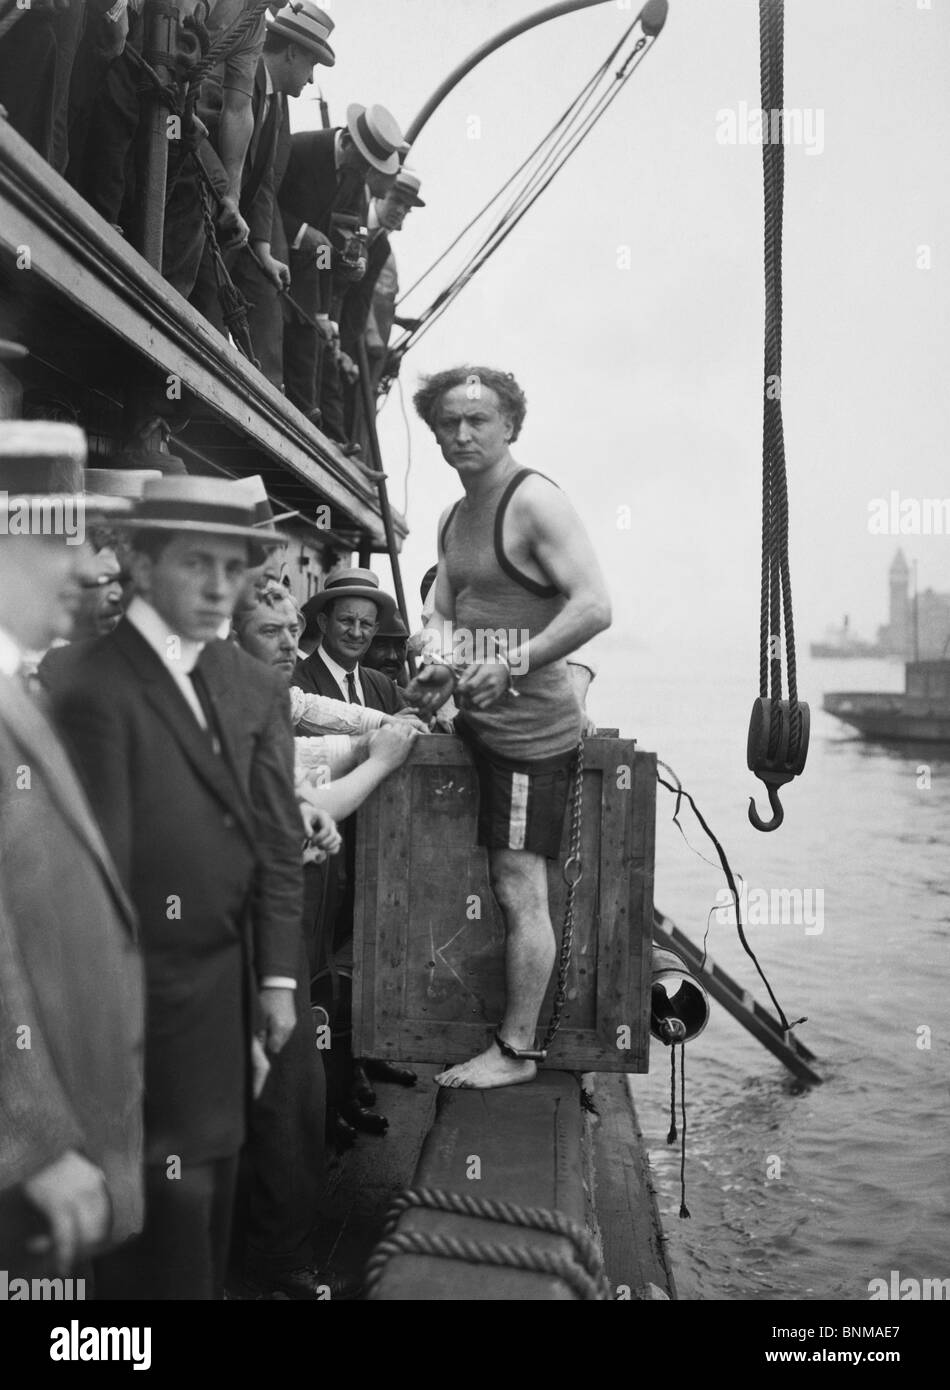 Escapologist Harry Houdini (1874 - 1926) preparando a svolgere il suo famoso 'fuoribordo box fuga' per la prima volta nel mese di luglio 1912. Foto Stock